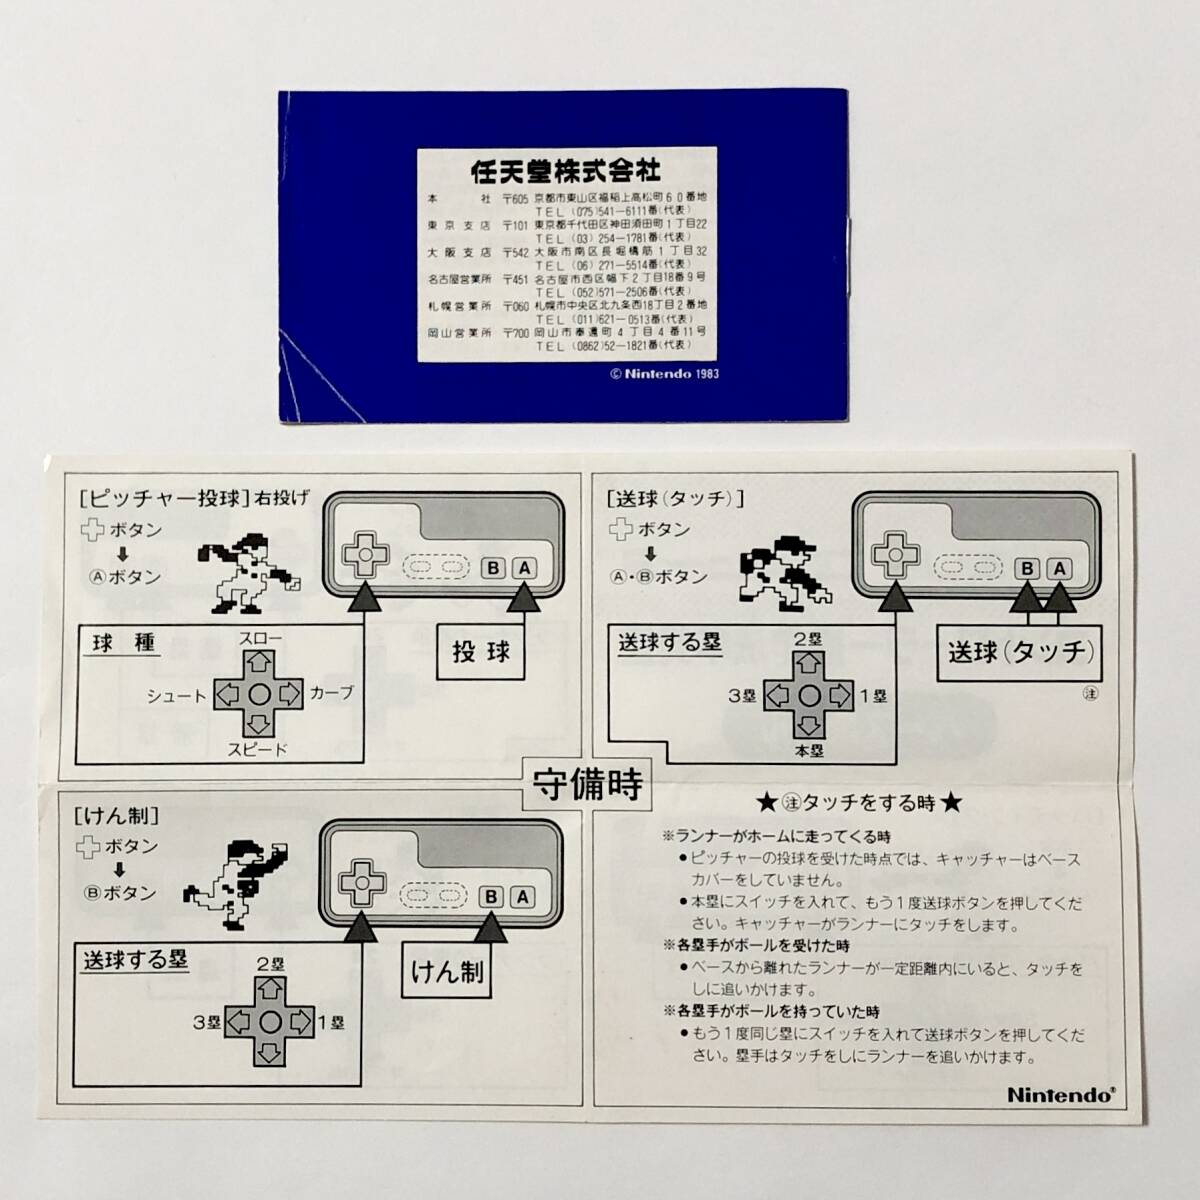 ファミコン ベースボール 小箱版 箱説付き 痛みあり 操作法早見図付き Nintendo Famicom Baseball Small Box Version CIB Tested_画像10